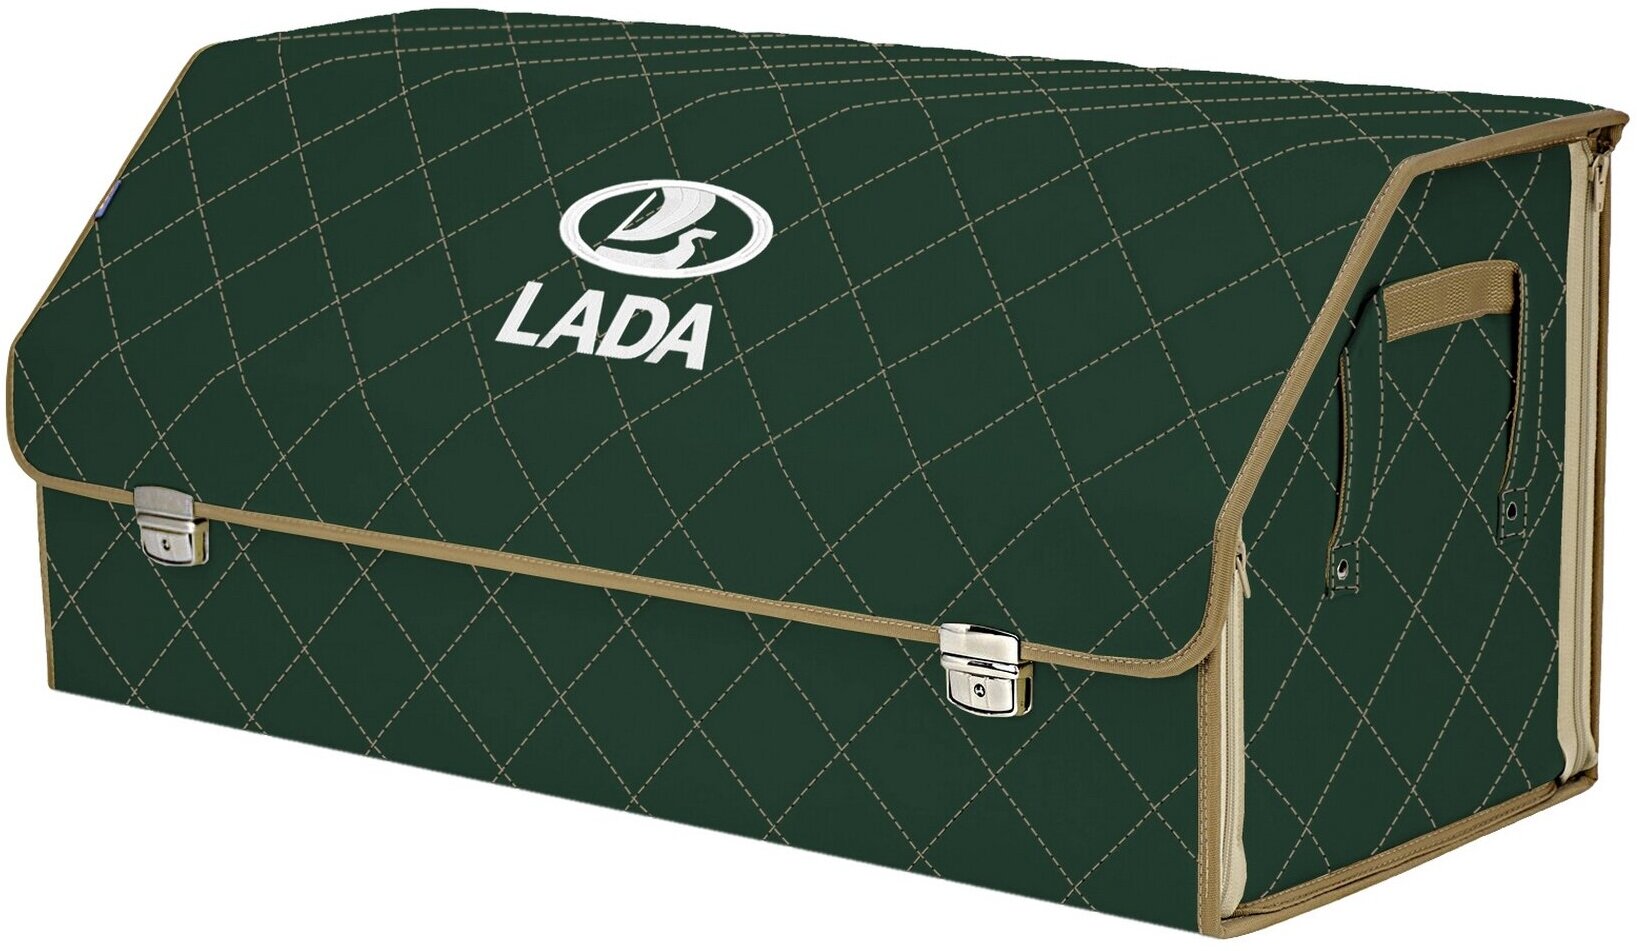 Органайзер-саквояж в багажник "Союз Премиум" (размер XXL). Цвет: зеленый с бежевой прострочкой Ромб и вышивкой LADA (лада).